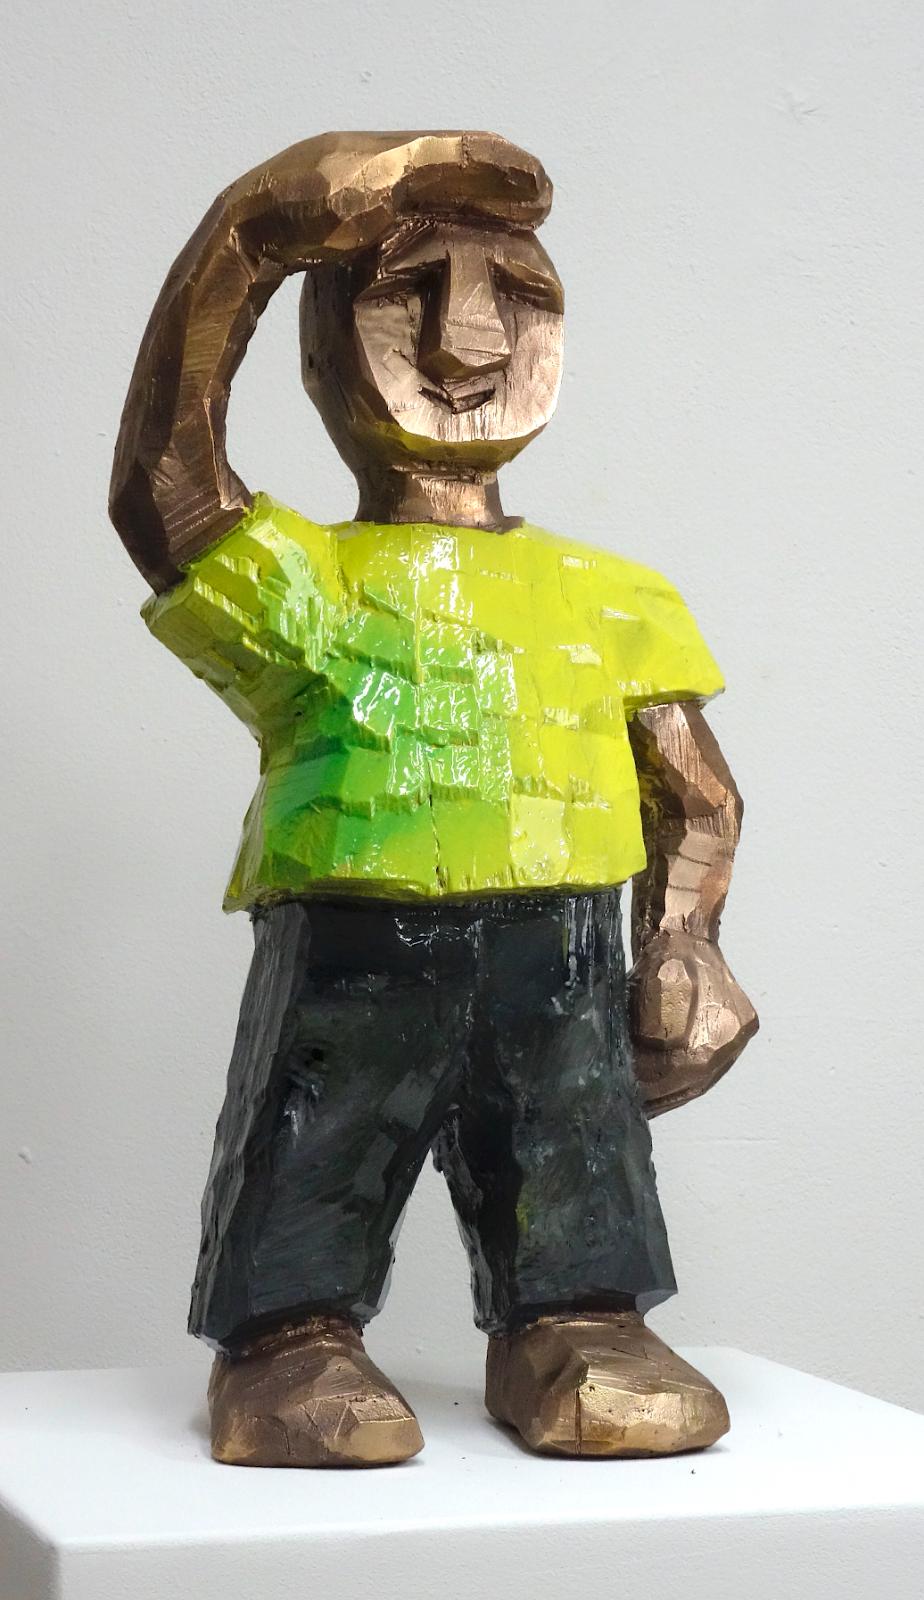 Daniel Wagenblast, mannomann 1 (gelb), 2020, Bronze bemalt, 50 x 25 x 16 cm, Preis auf Anfrage, Galerie Cyprian Brenner